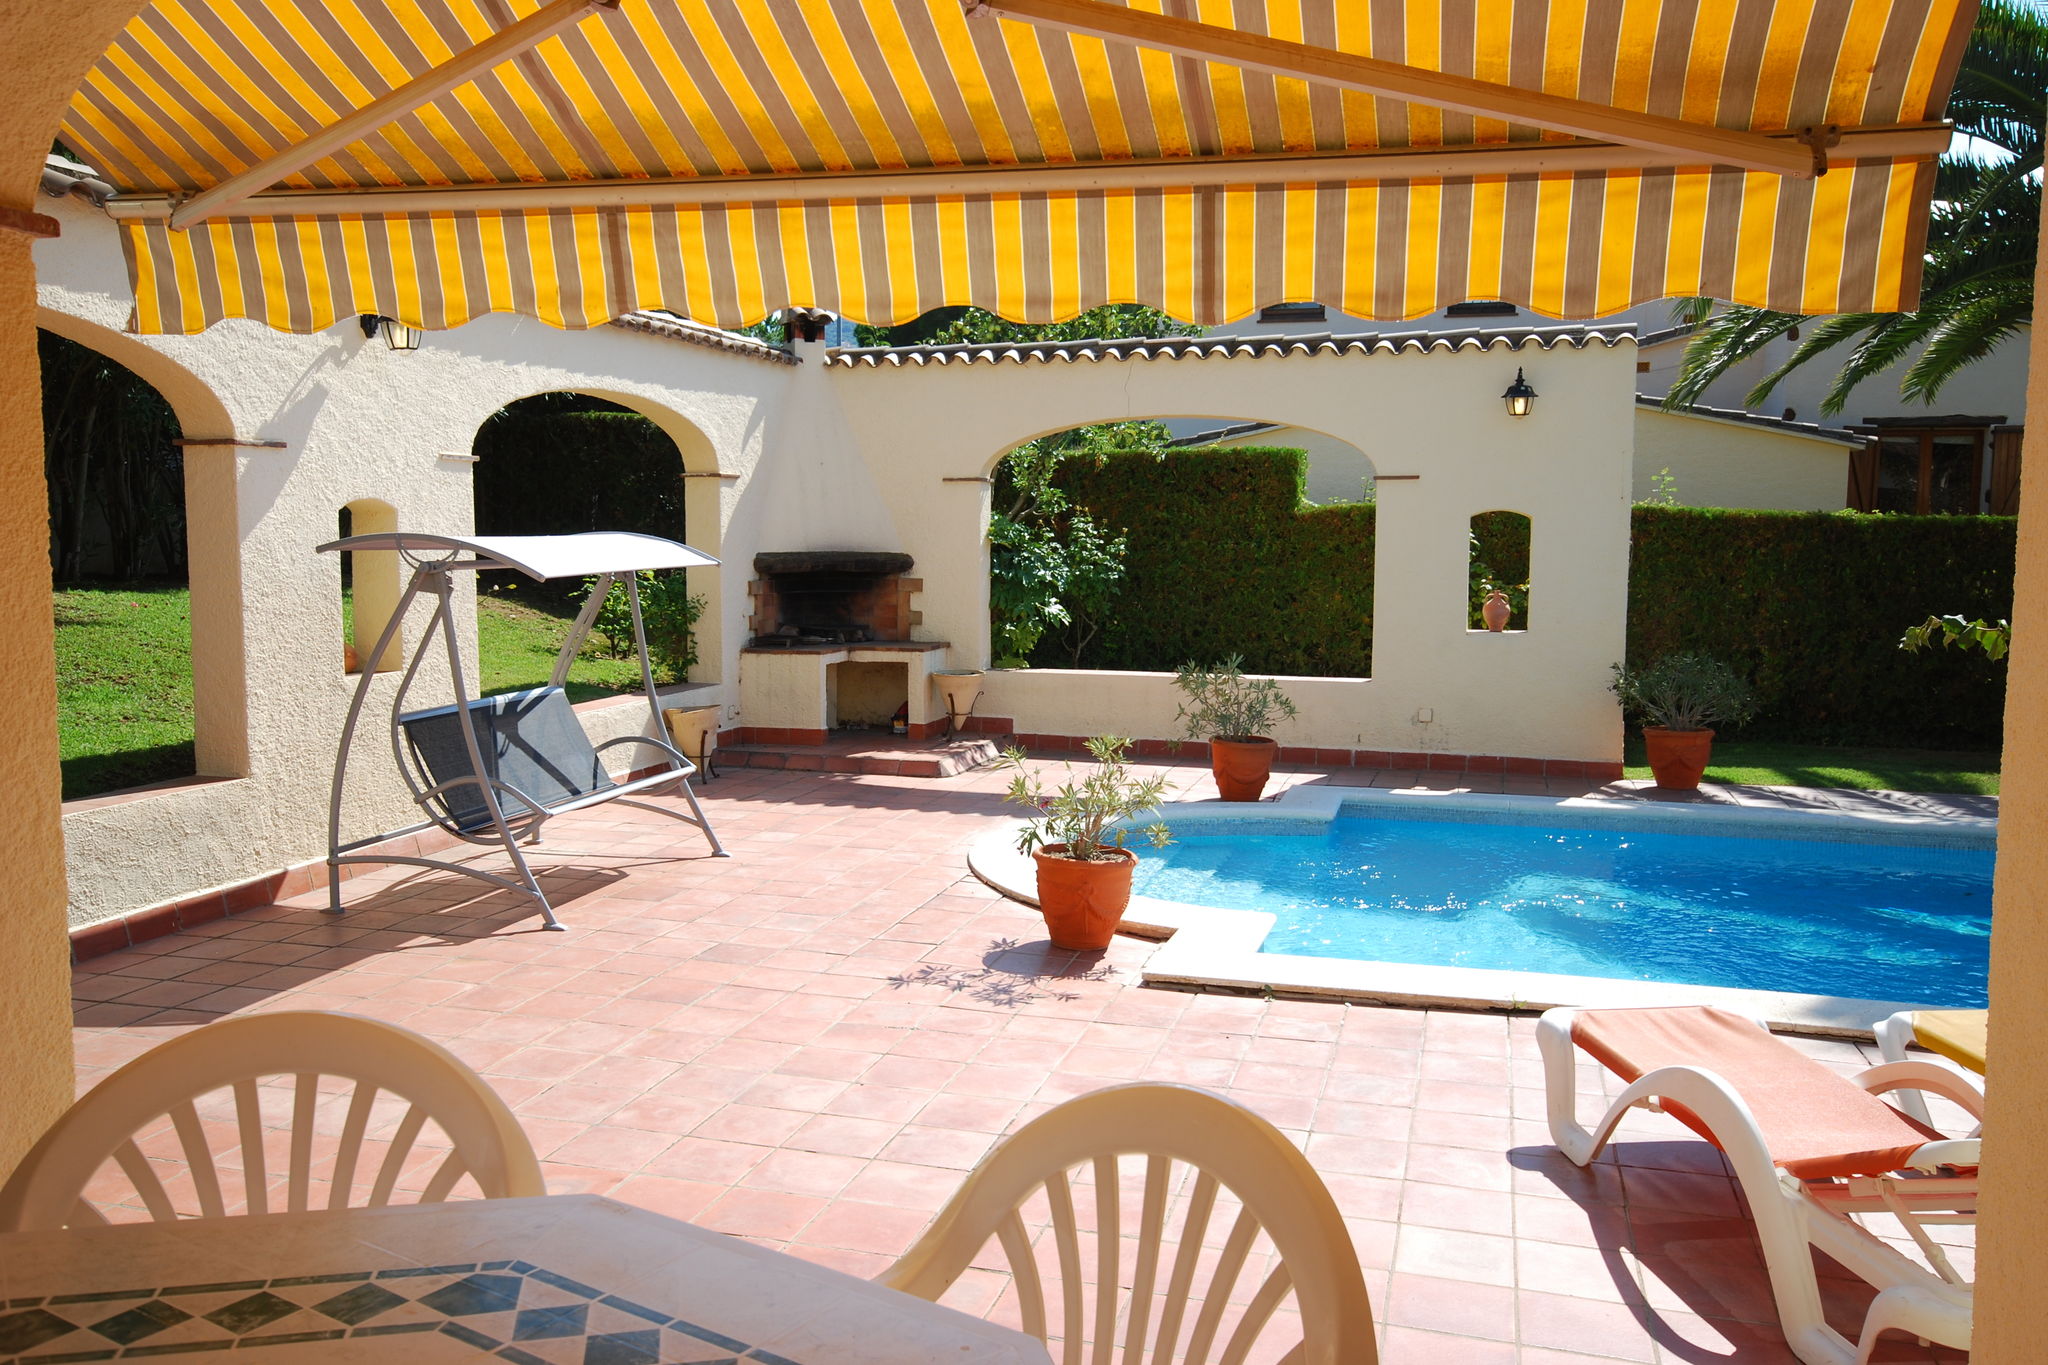 Vredige villa in Calonge, Spanje met zwembad